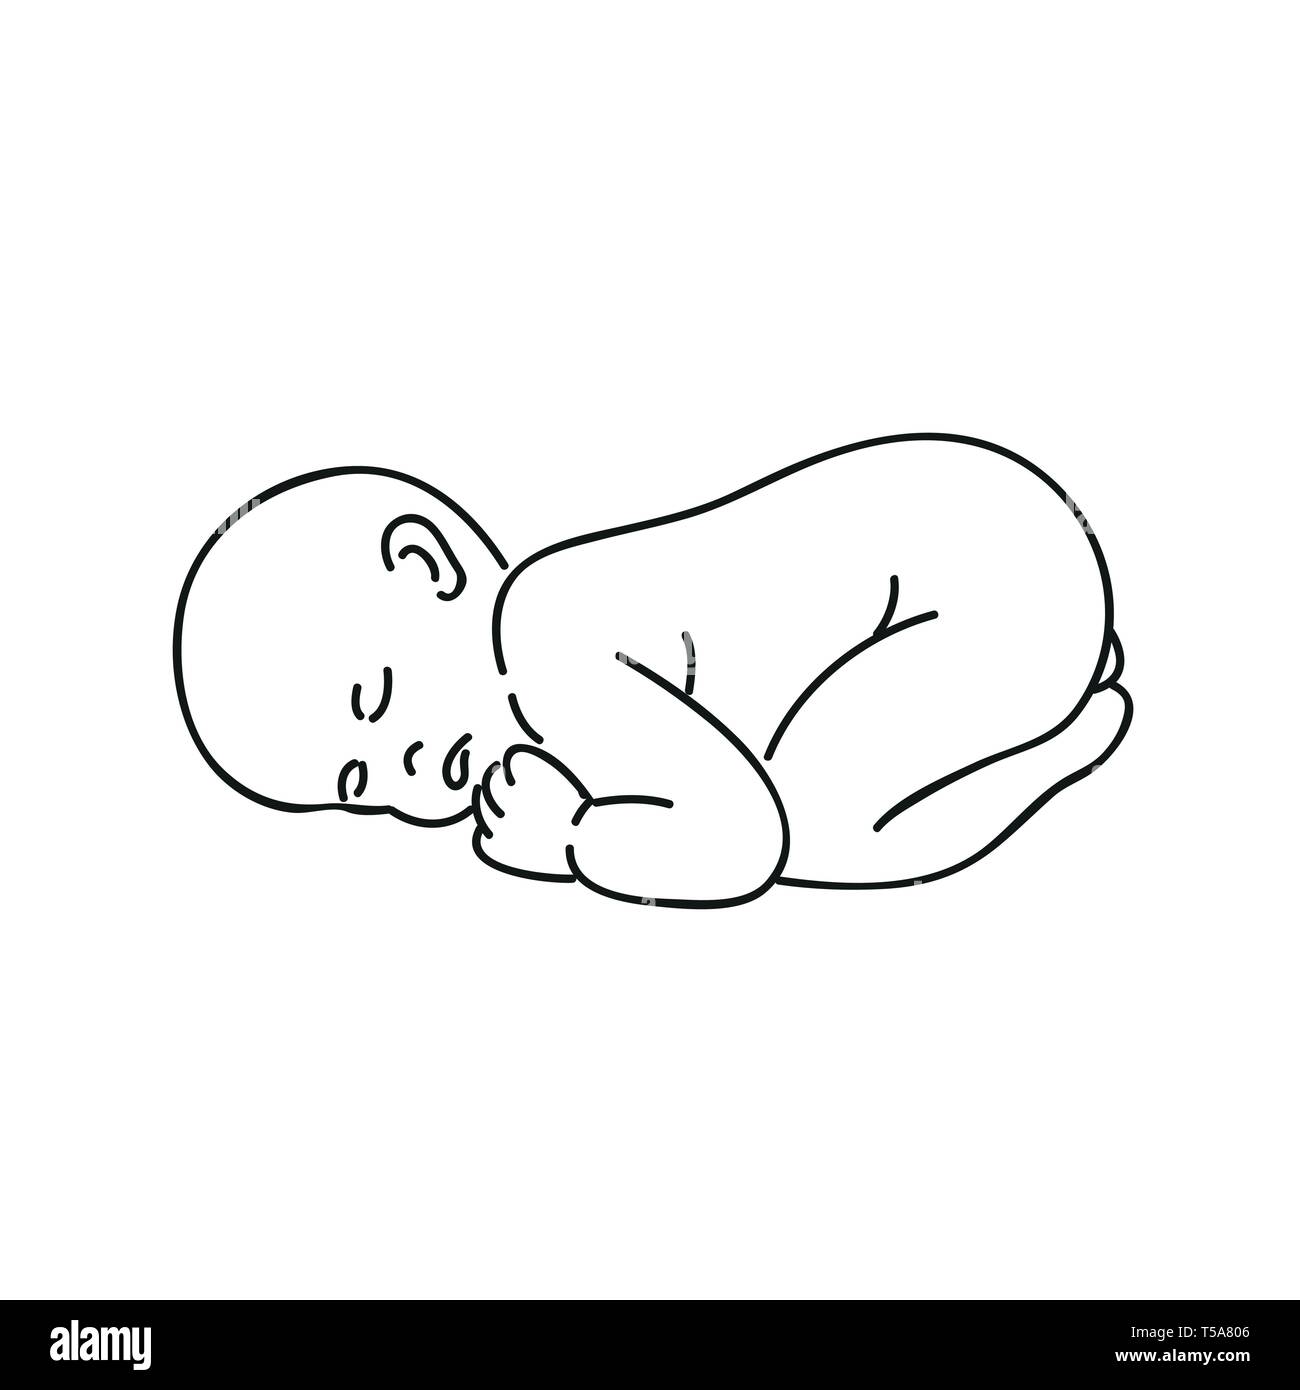 Bébé endormi contours dessin isolé sur fond blanc vector illustration EPS10 Illustration de Vecteur